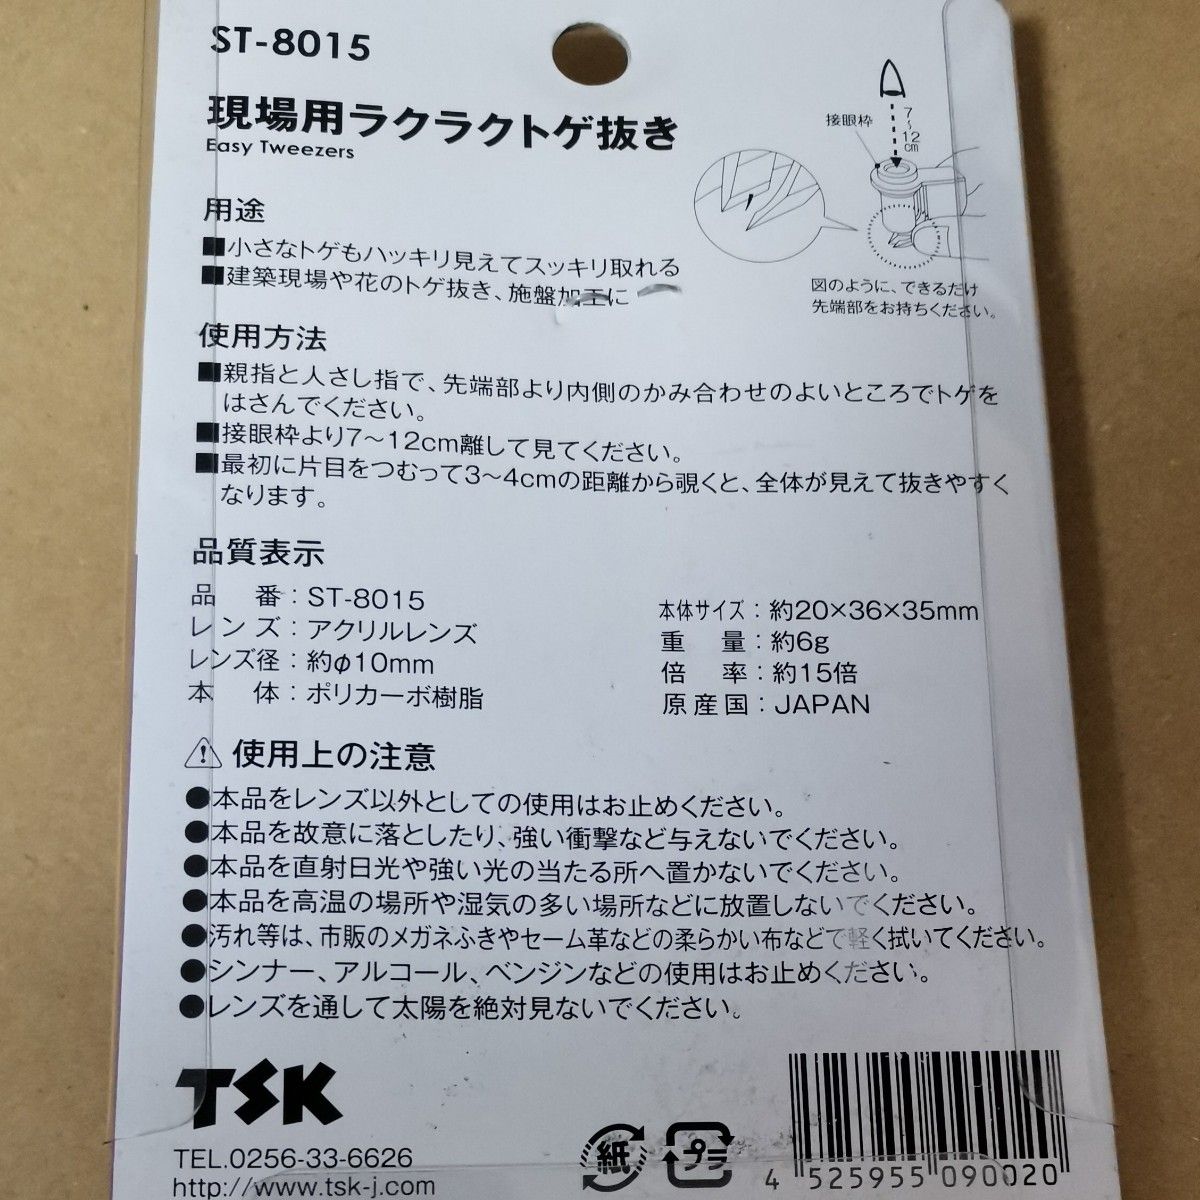 TSK とげ抜き付きルーペ 現場用 ラクラクトゲ抜き 倍率15倍 レンズ径10mm 日本製 ST-8015 すいばり